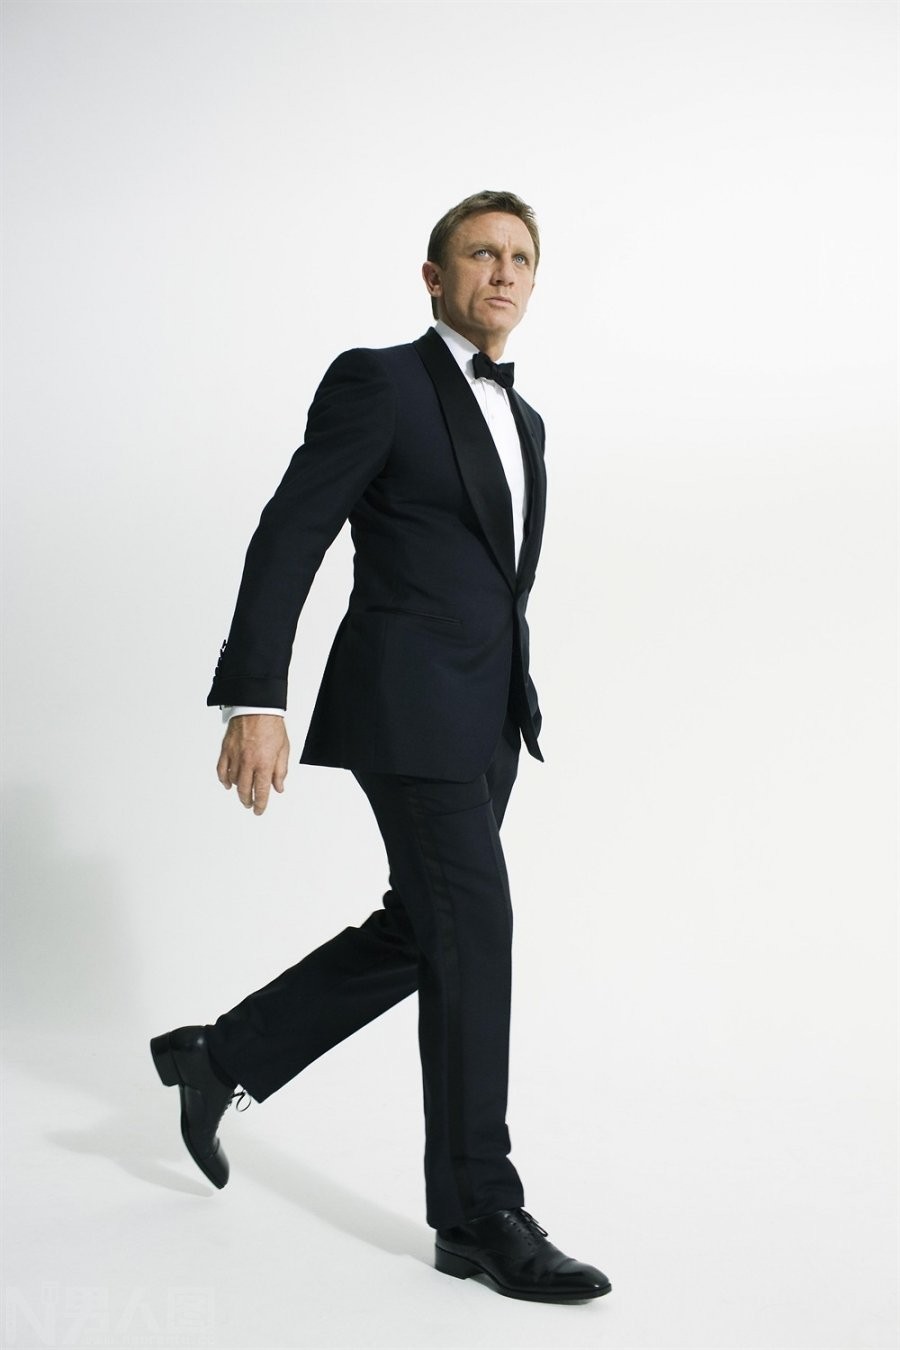 007主演52岁欧美帅哥丹尼尔克雷格黑色西装写真